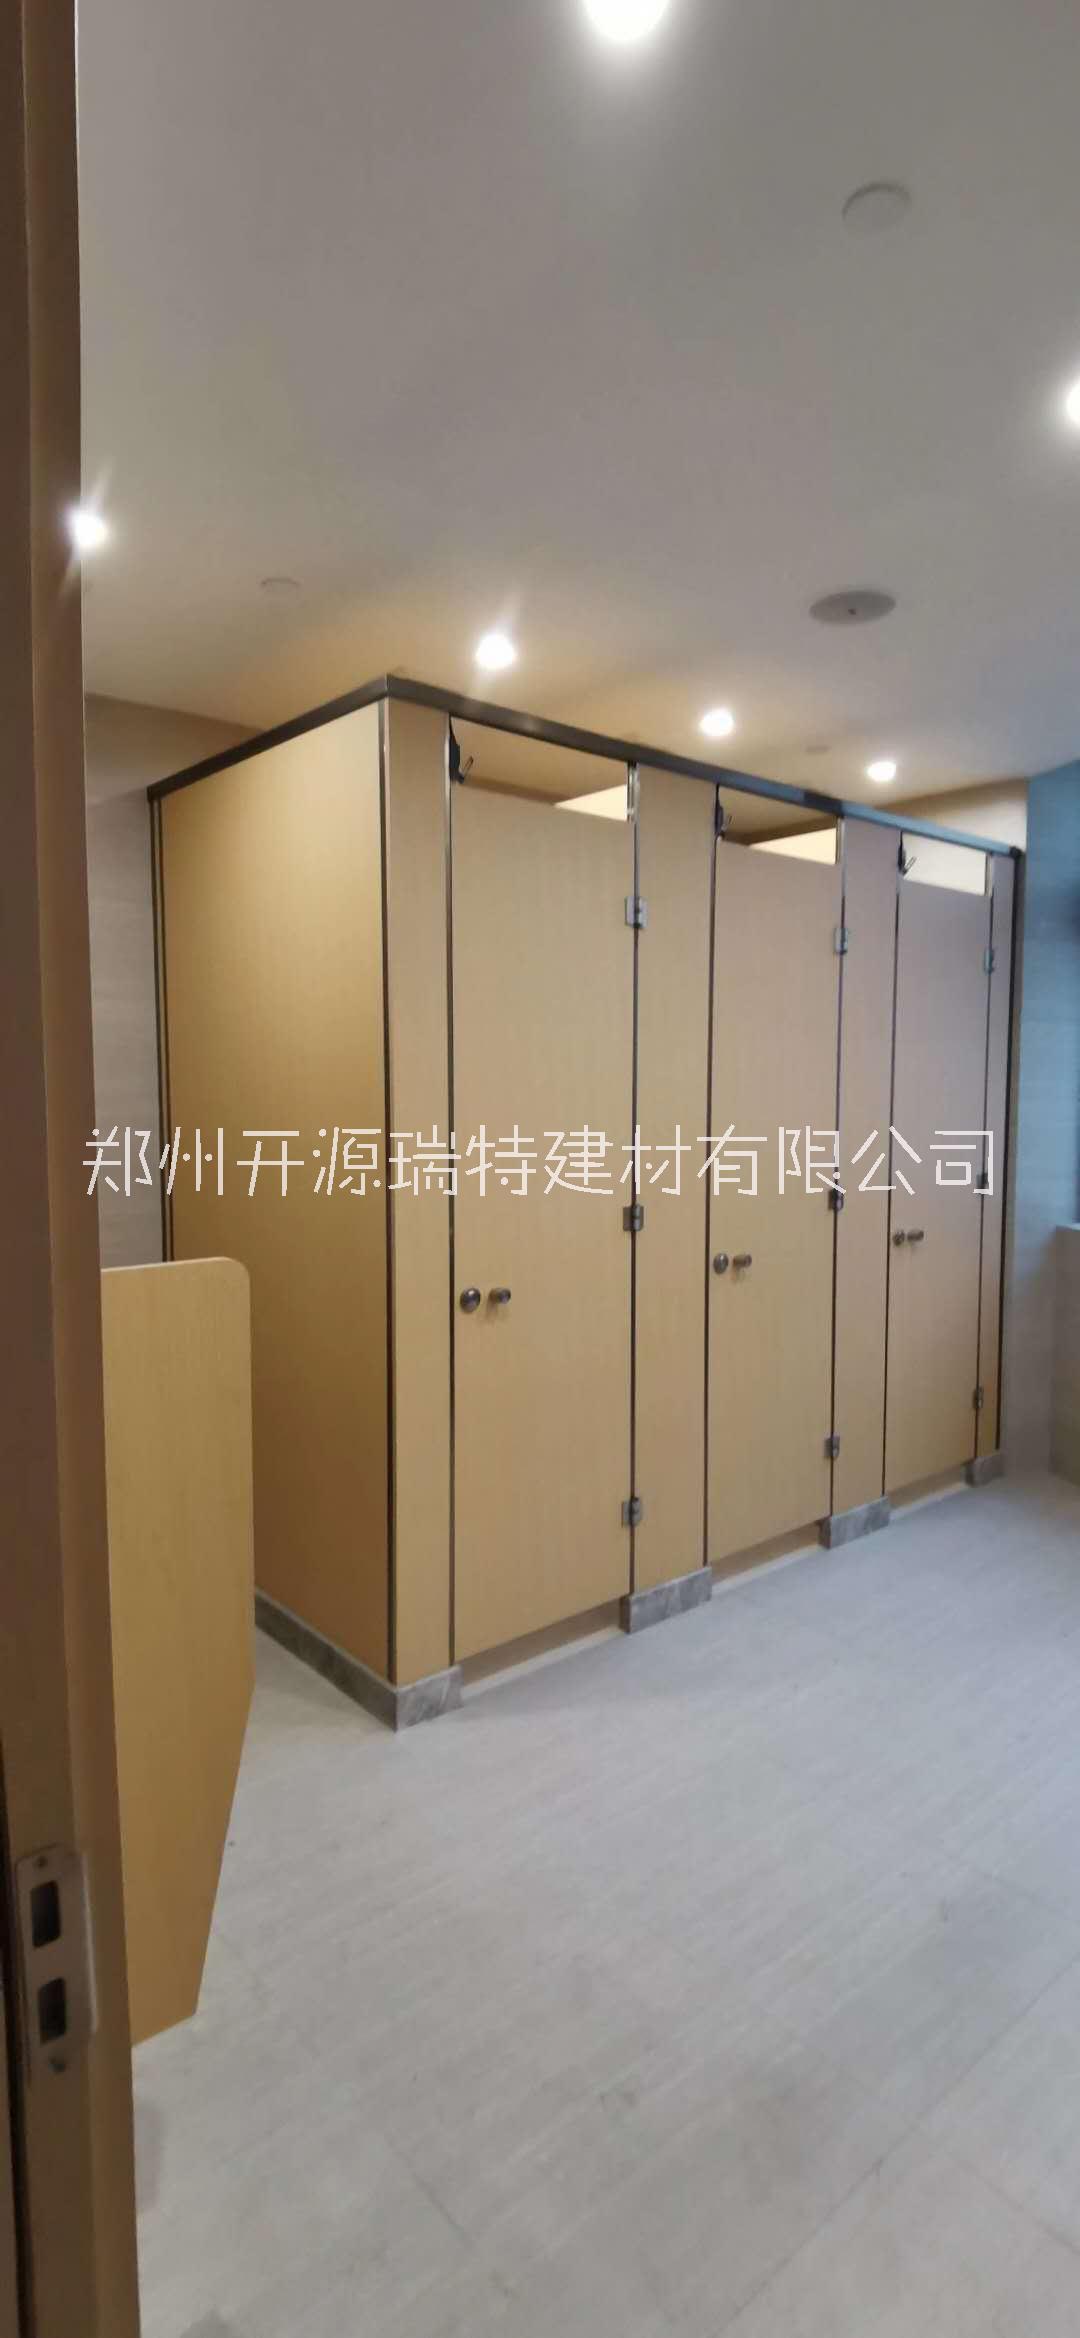 河南公共卫生间隔断多重优惠 郑州开源卫生间隔断 公共厕所隔断